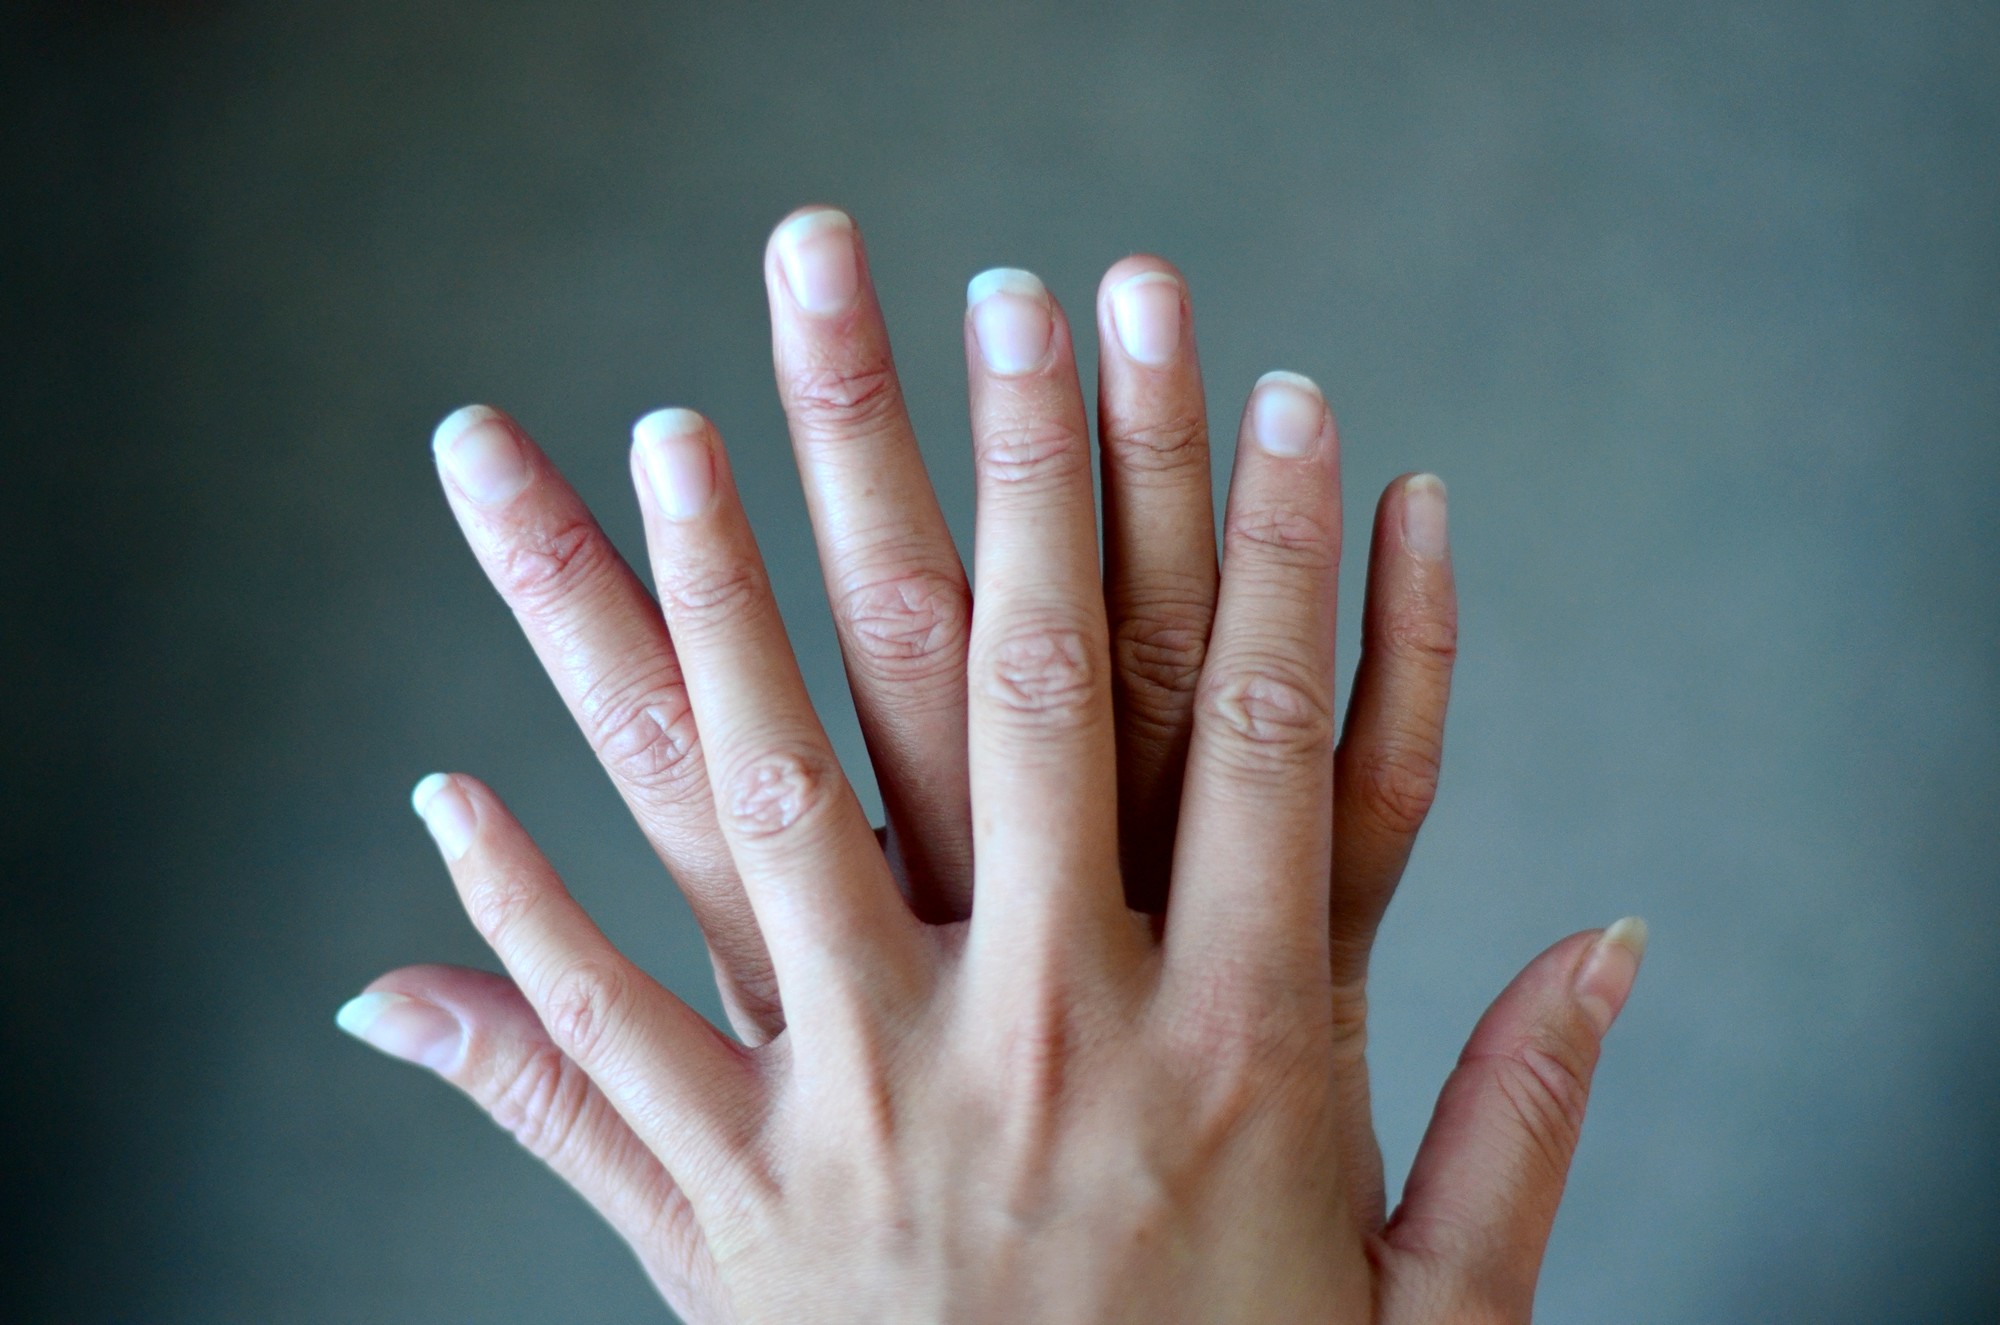 comment avoir de long ongles rapidement naturellement